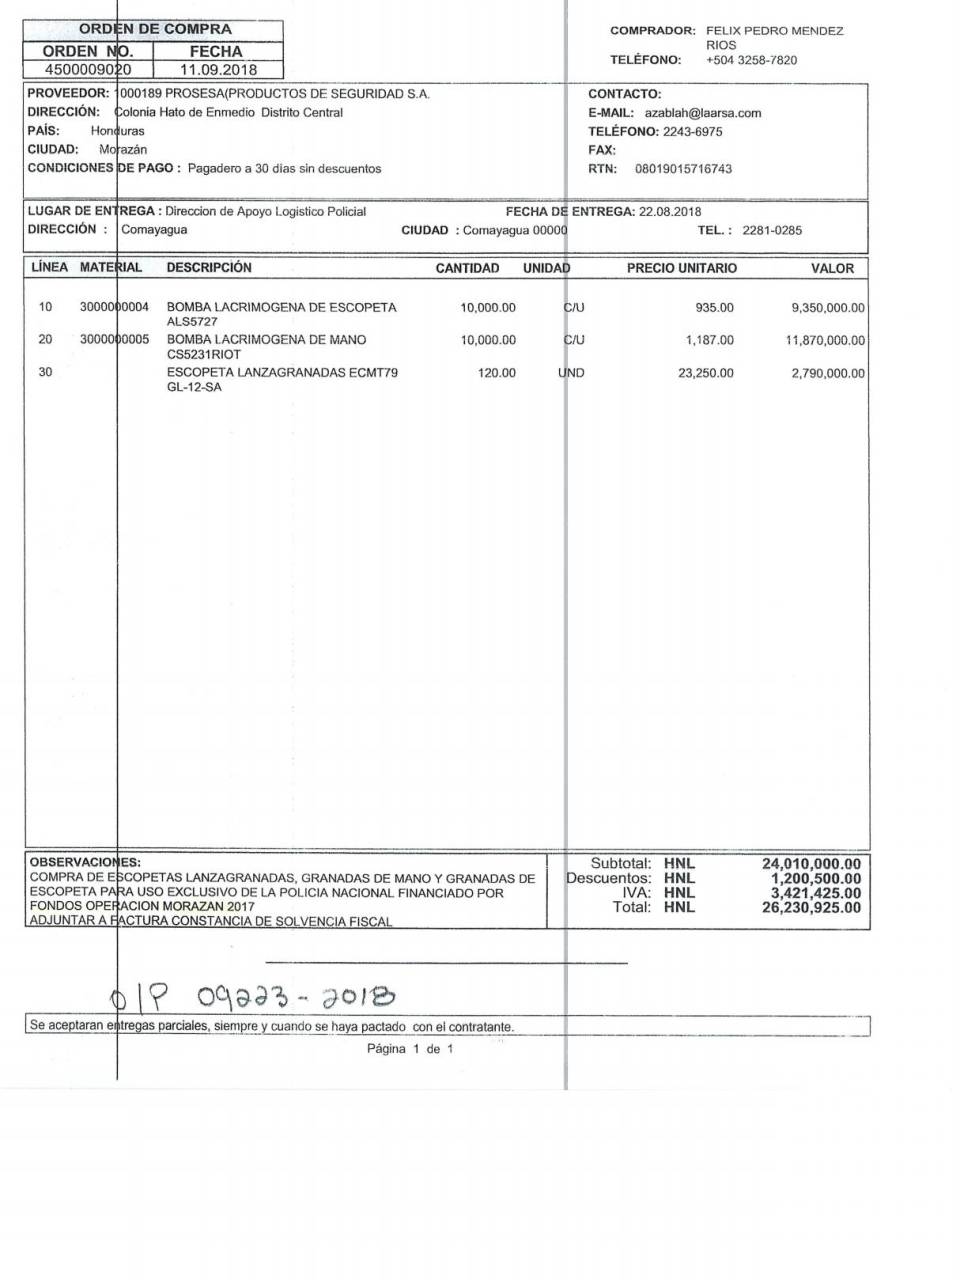 $!Esta es la orden de compra 4500009020 a la empresa Productos de Seguridad S.A. (Prosesa) para la adquisión de bombas lacrimógenas.